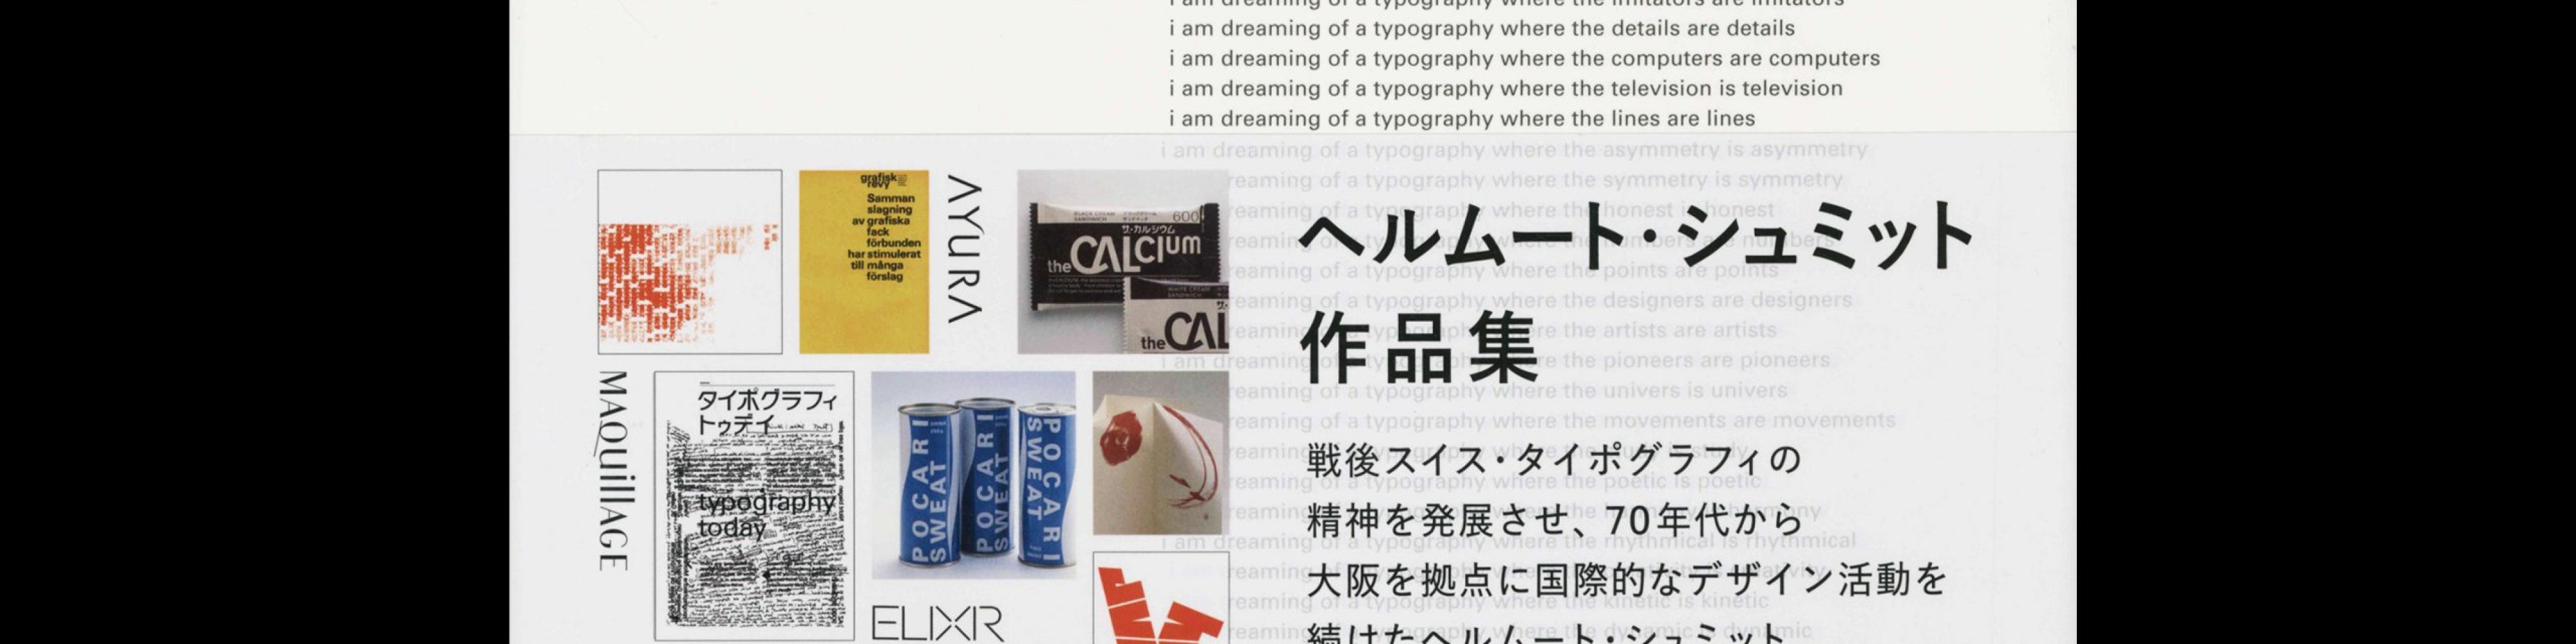 Schmid Typography, Graphicsha, 2022